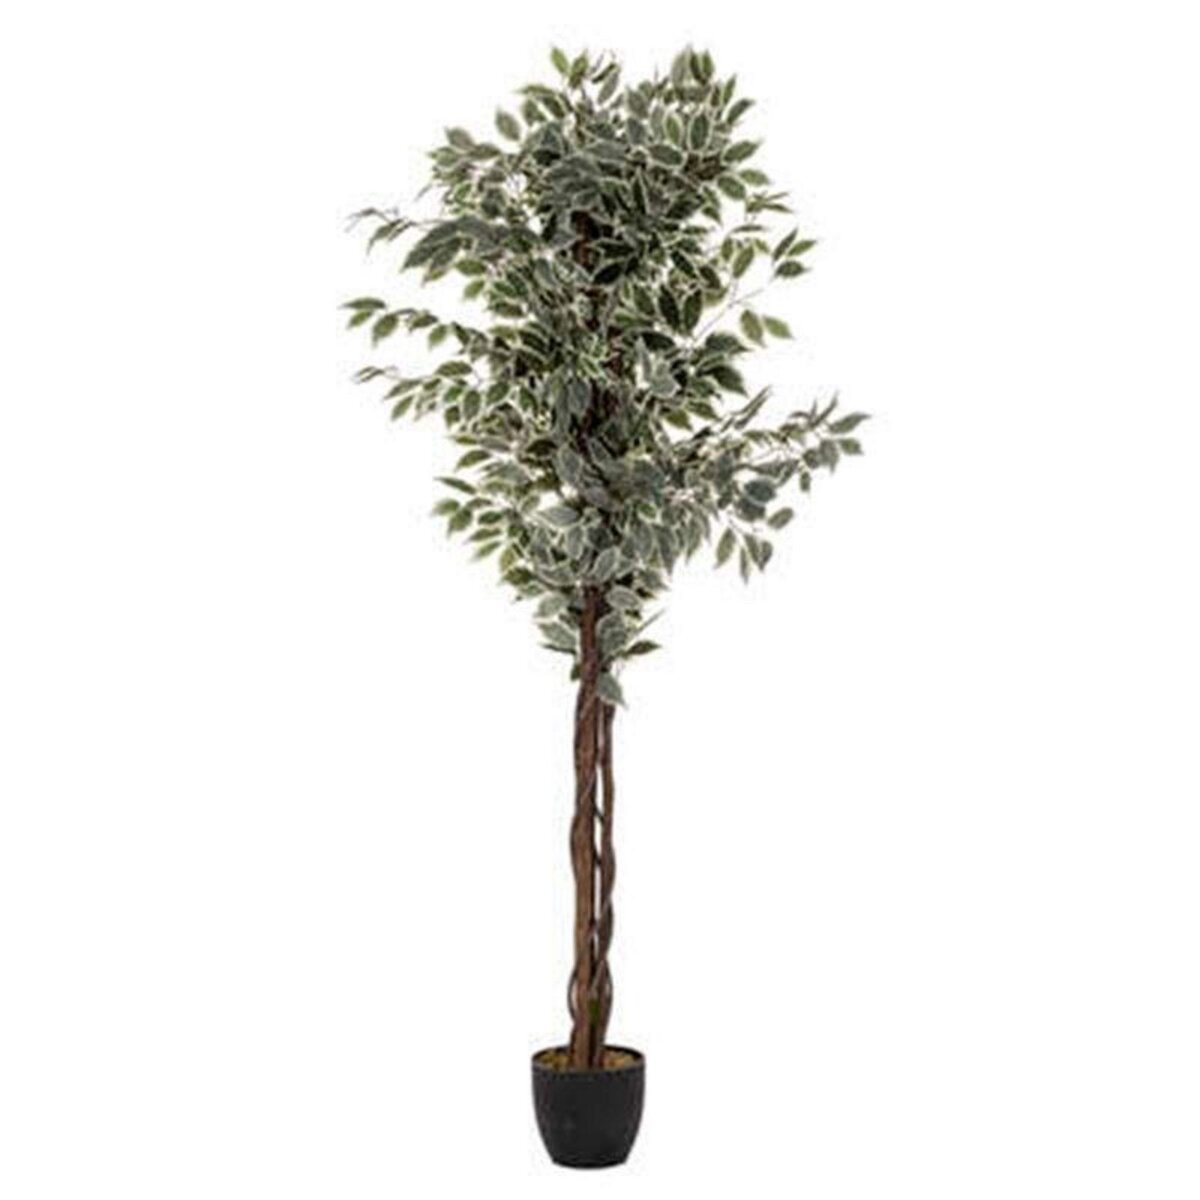  Plante Artificielle  Ficus  180cm Vert